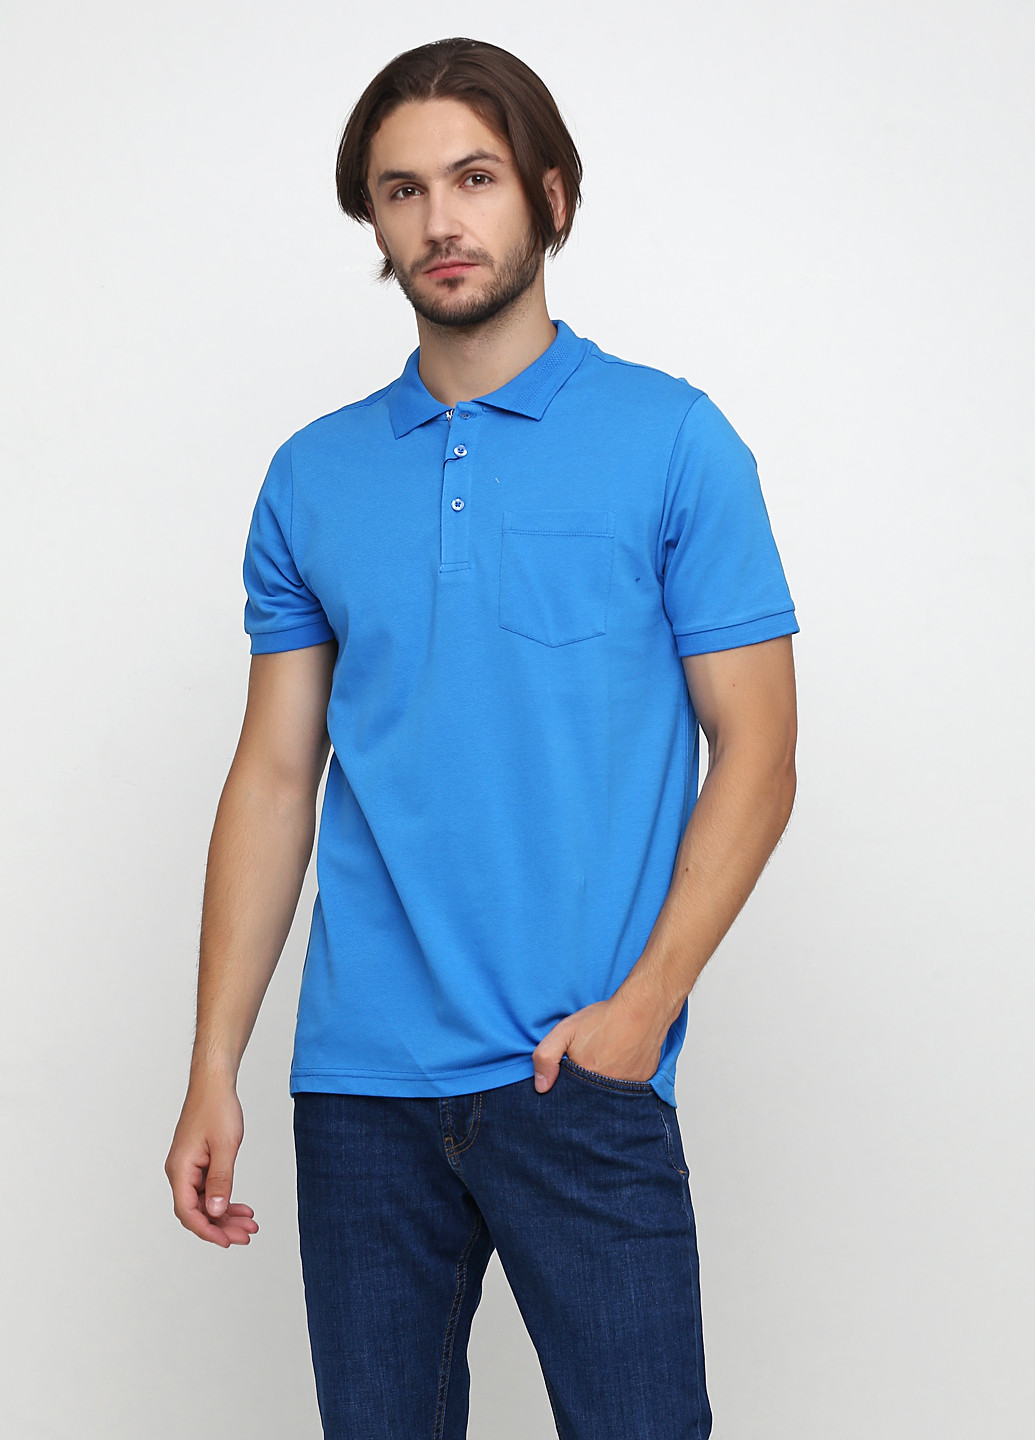 Синяя футболка-поло для мужчин Madoc Jeans однотонная